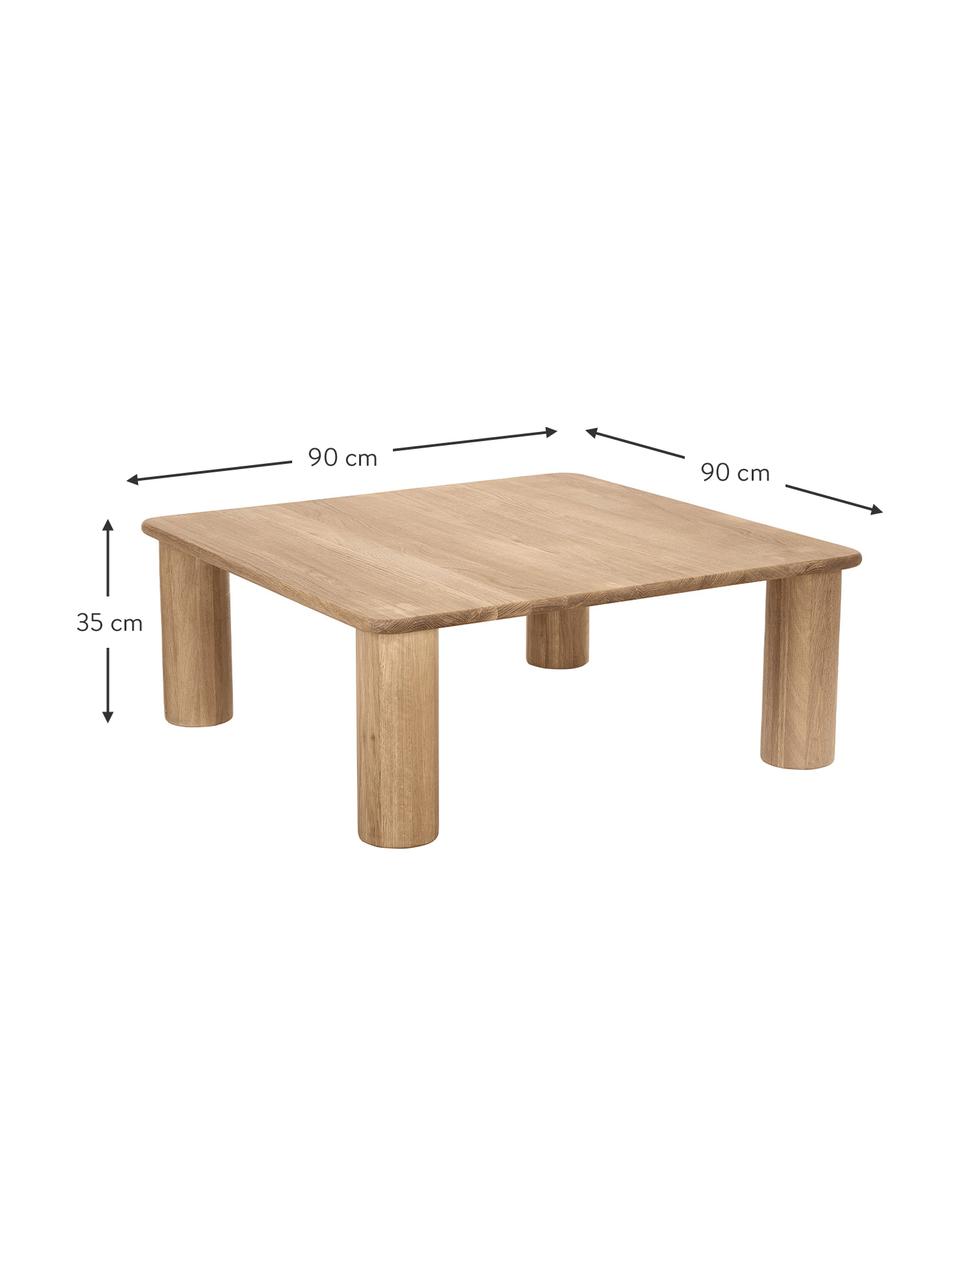 Dubový konferenční stolek Didi, Masivní dubové dřevo, olejované

Vzhledem k tomu, že se jedná o přírodní materiály, může se výrobek lišit od vyobrazení. Každý výrobek je jedinečný!, Dubové dřevo, Š 90 cm, H 90 cm